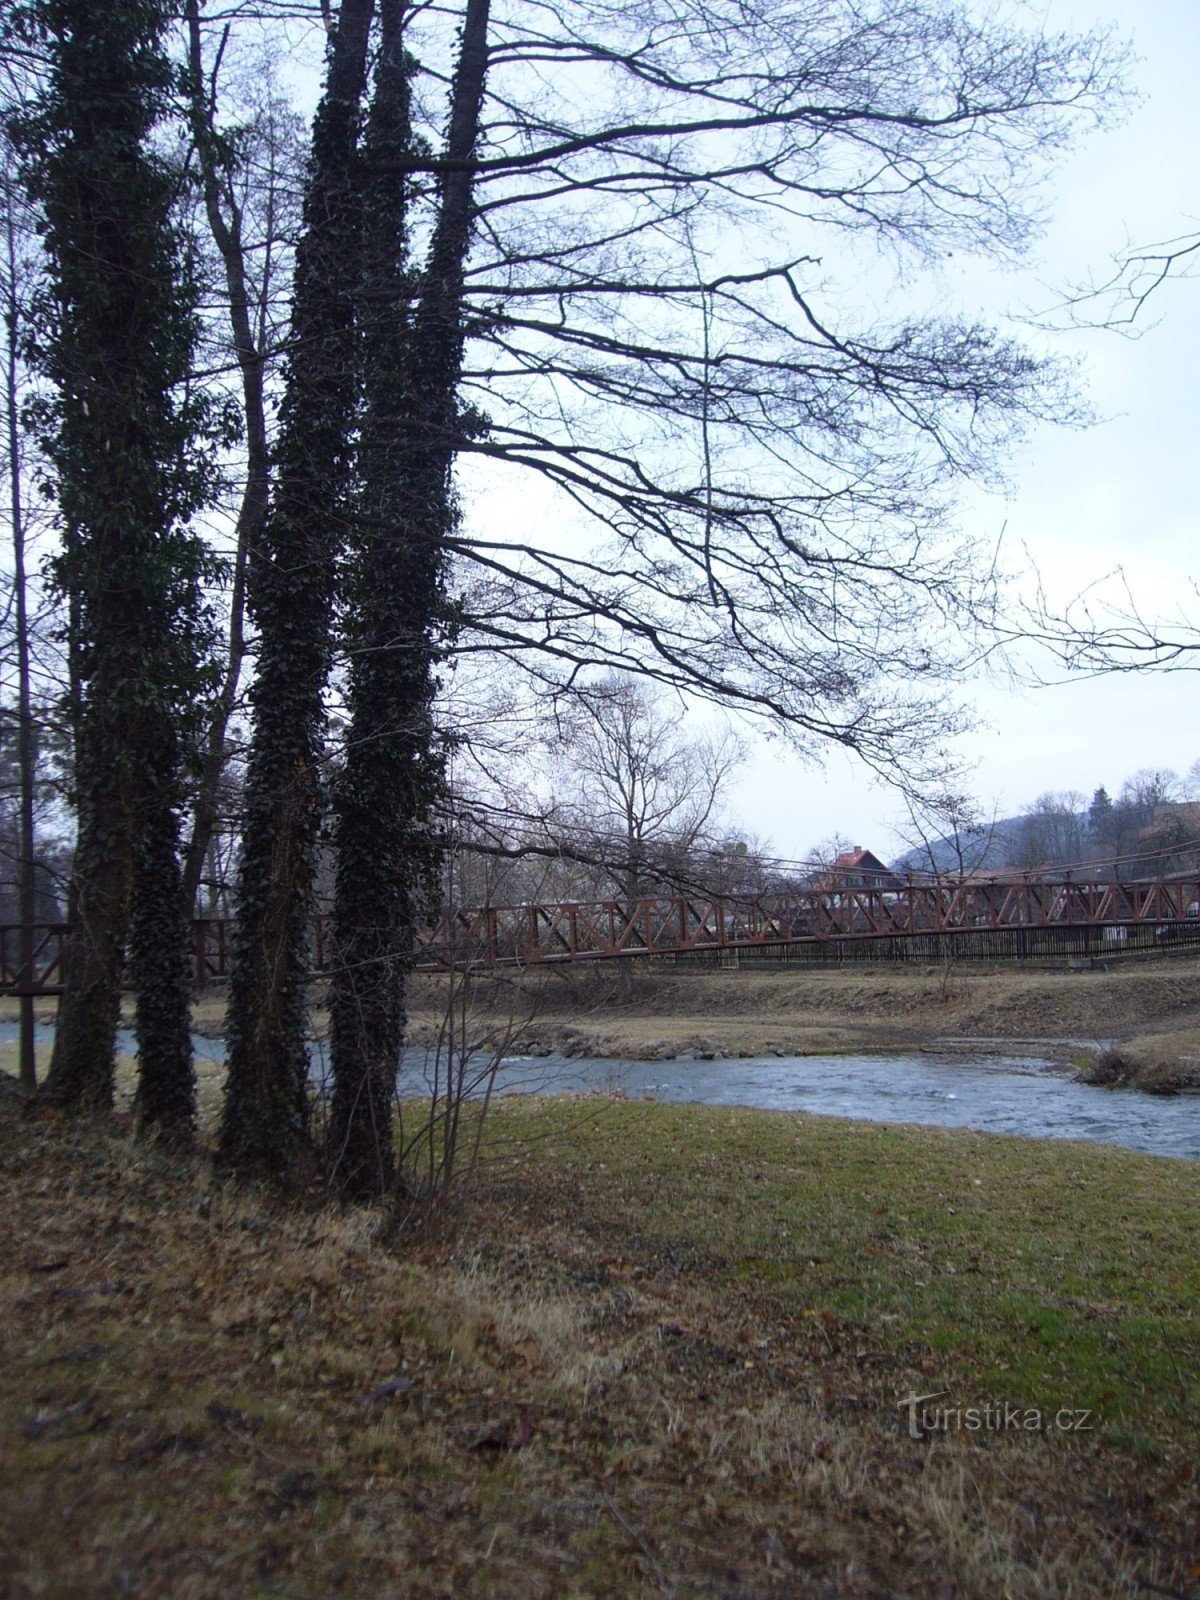 赫拉德茨和莫拉维奇的索桥